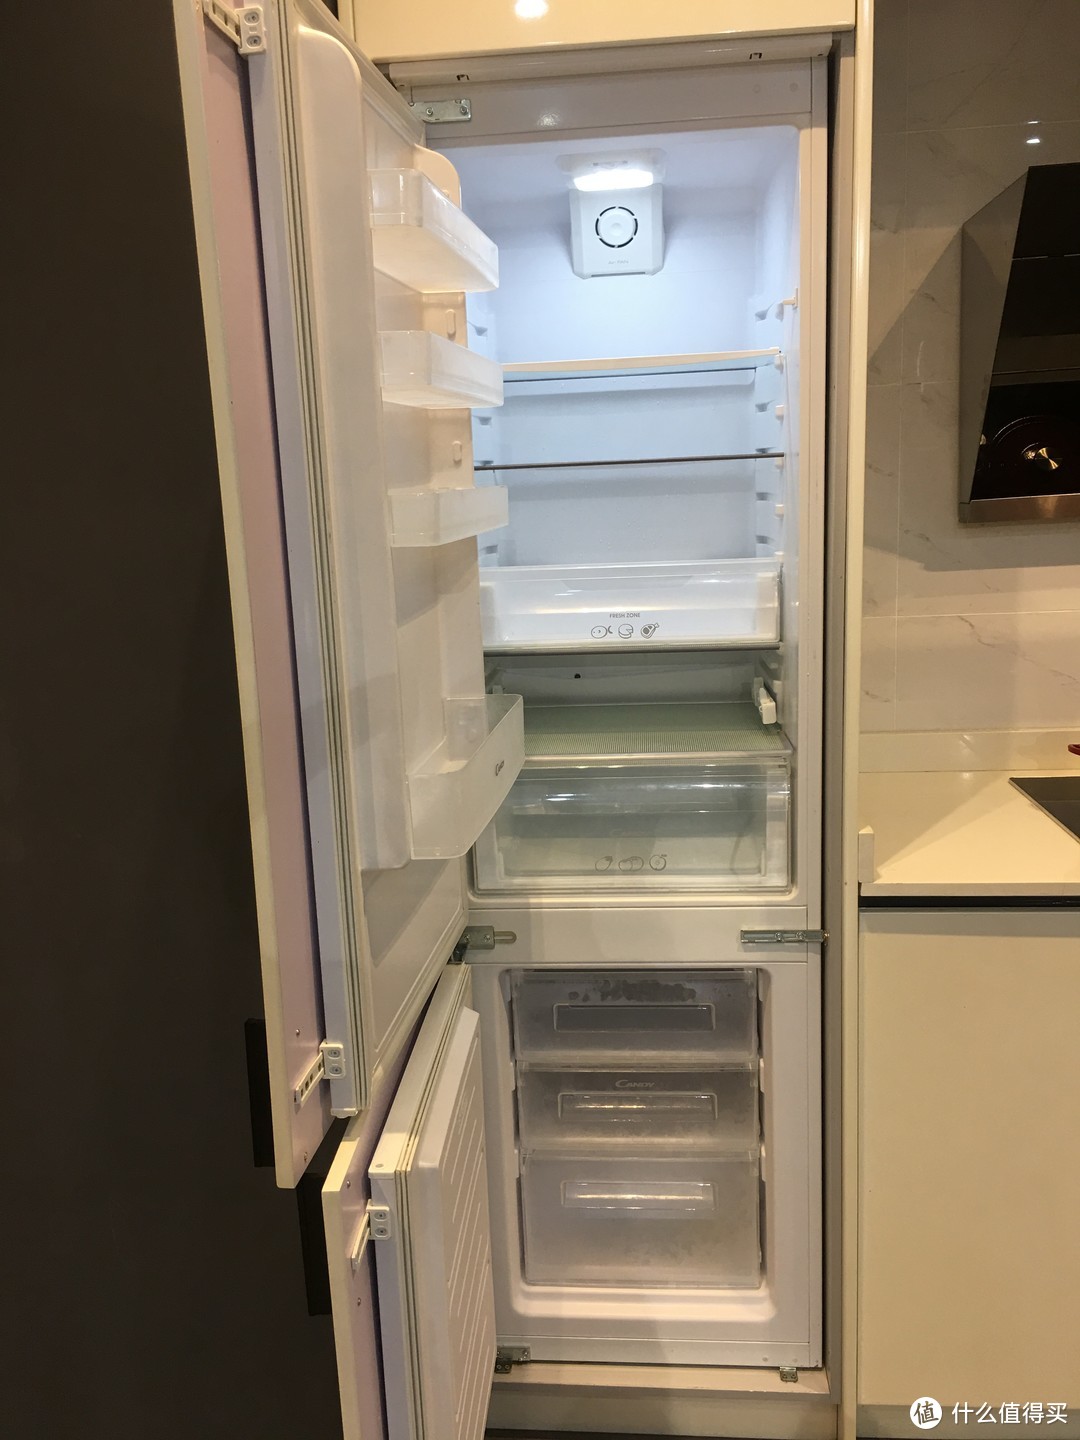 嵌入式冰箱值不值得买？嵌入式冰箱的五种偏见，你在哪里扎了根？